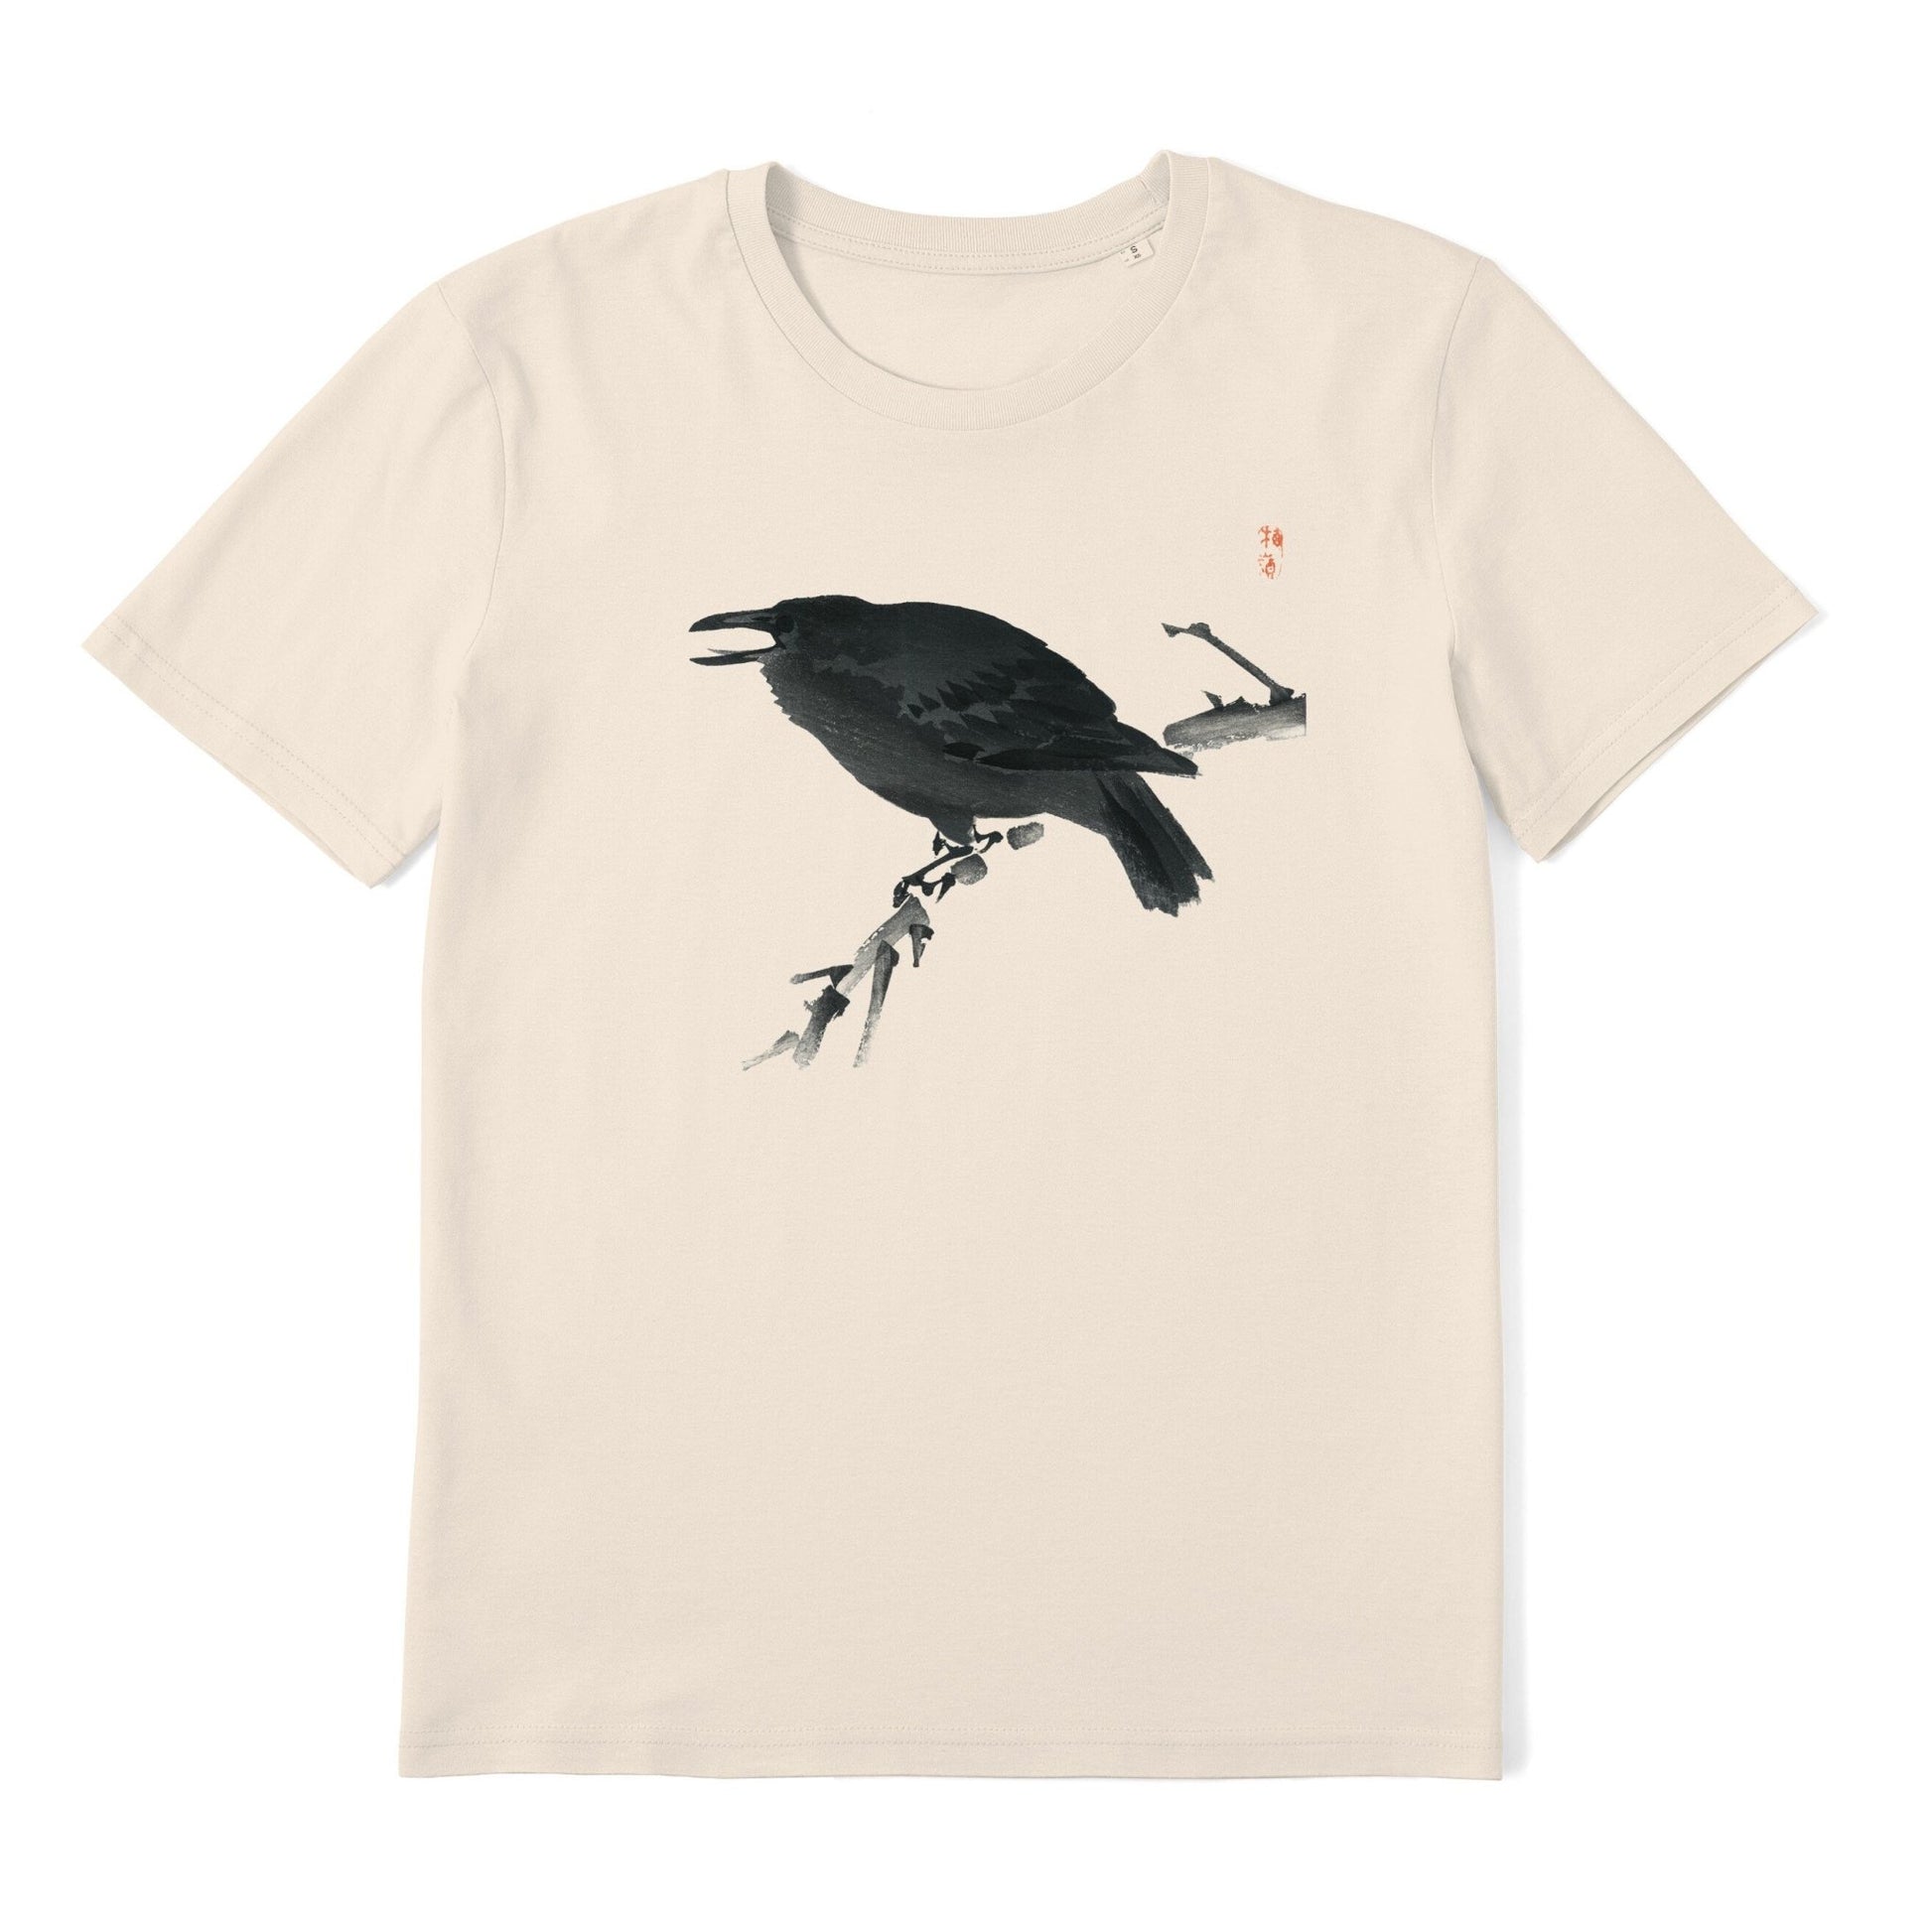 KONO BAIREI - Crow T-Shirt - Pathos Studio - Shirts & Tops